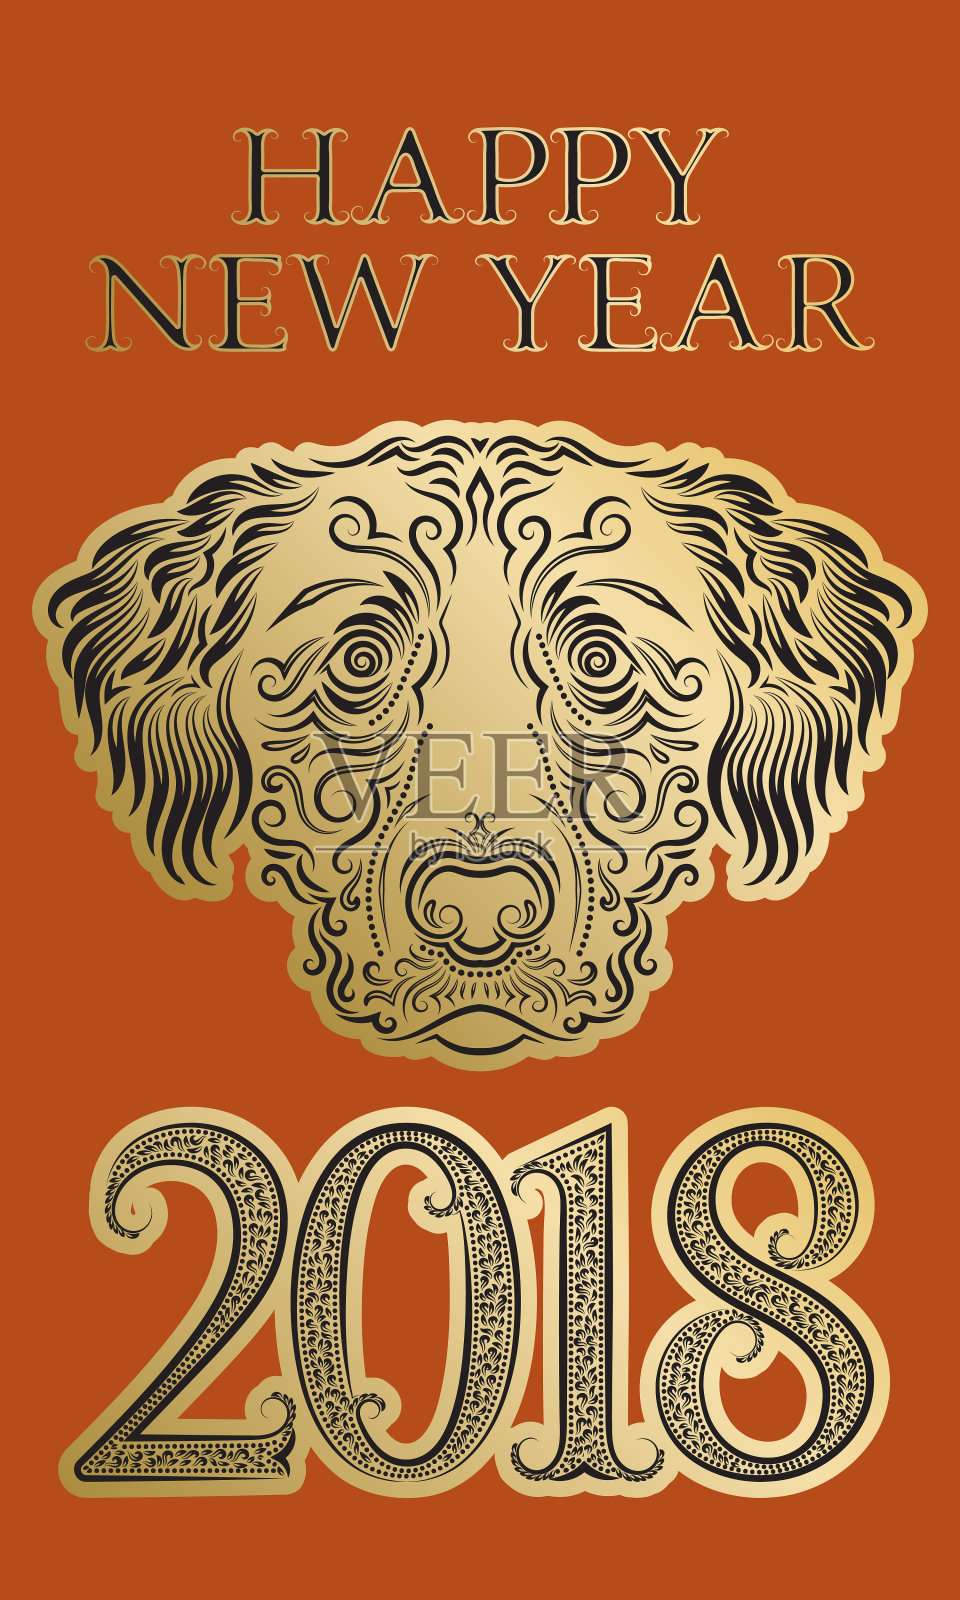 2018中国农历新年贺年贺卡模板与金黑色狗头图案和设计元素。设计模板素材